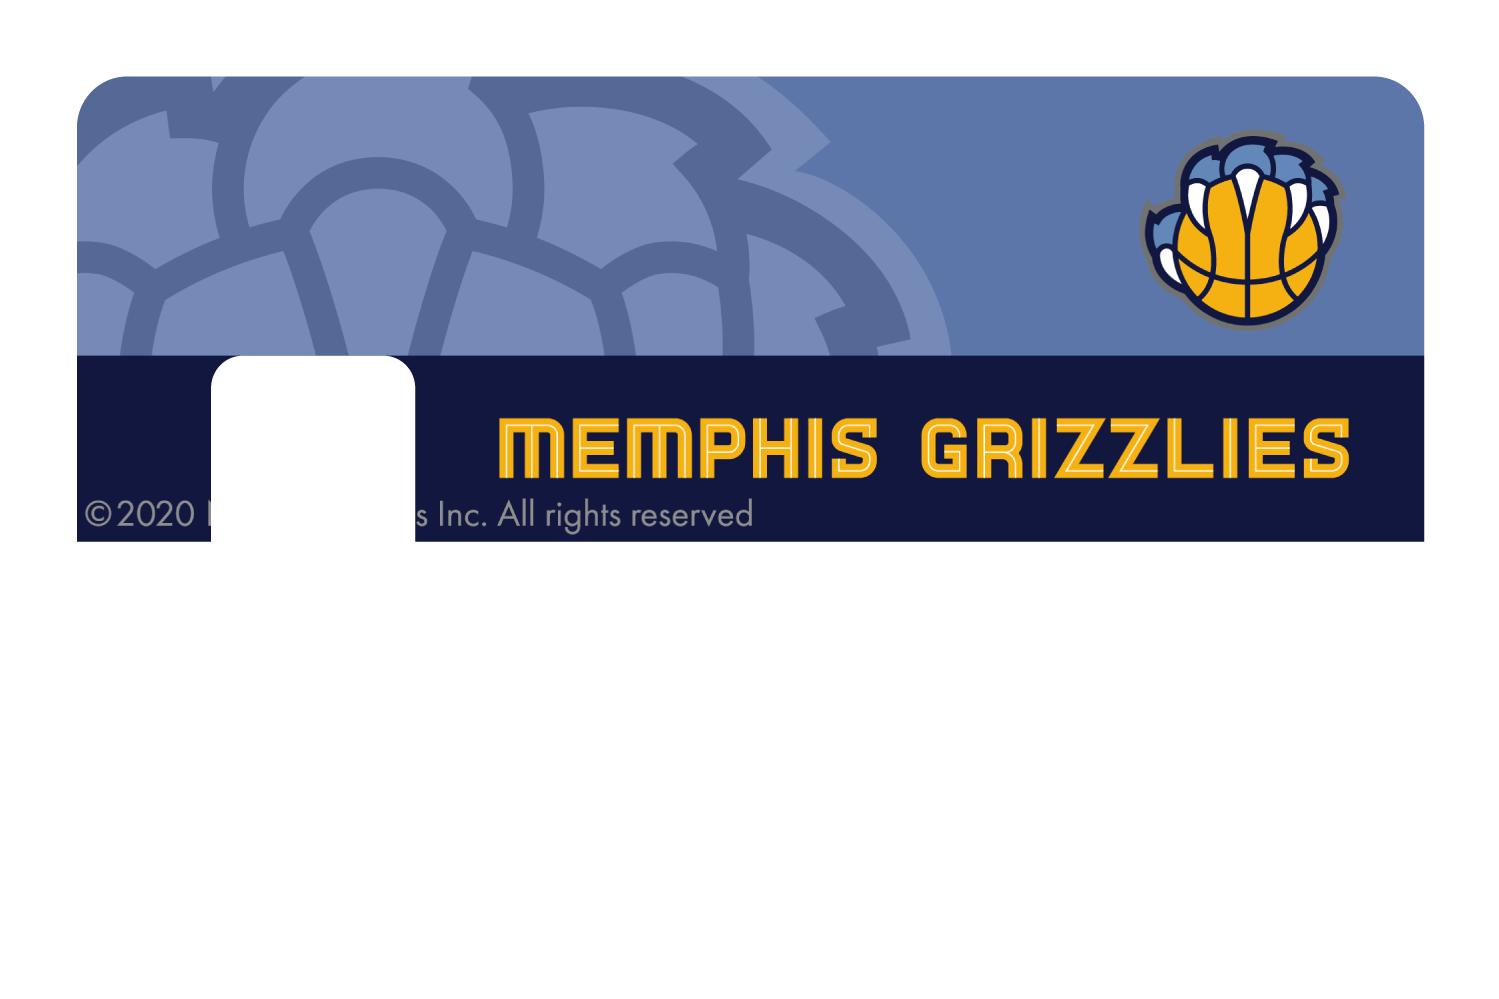 Memphis Grizzlies: Midcourt